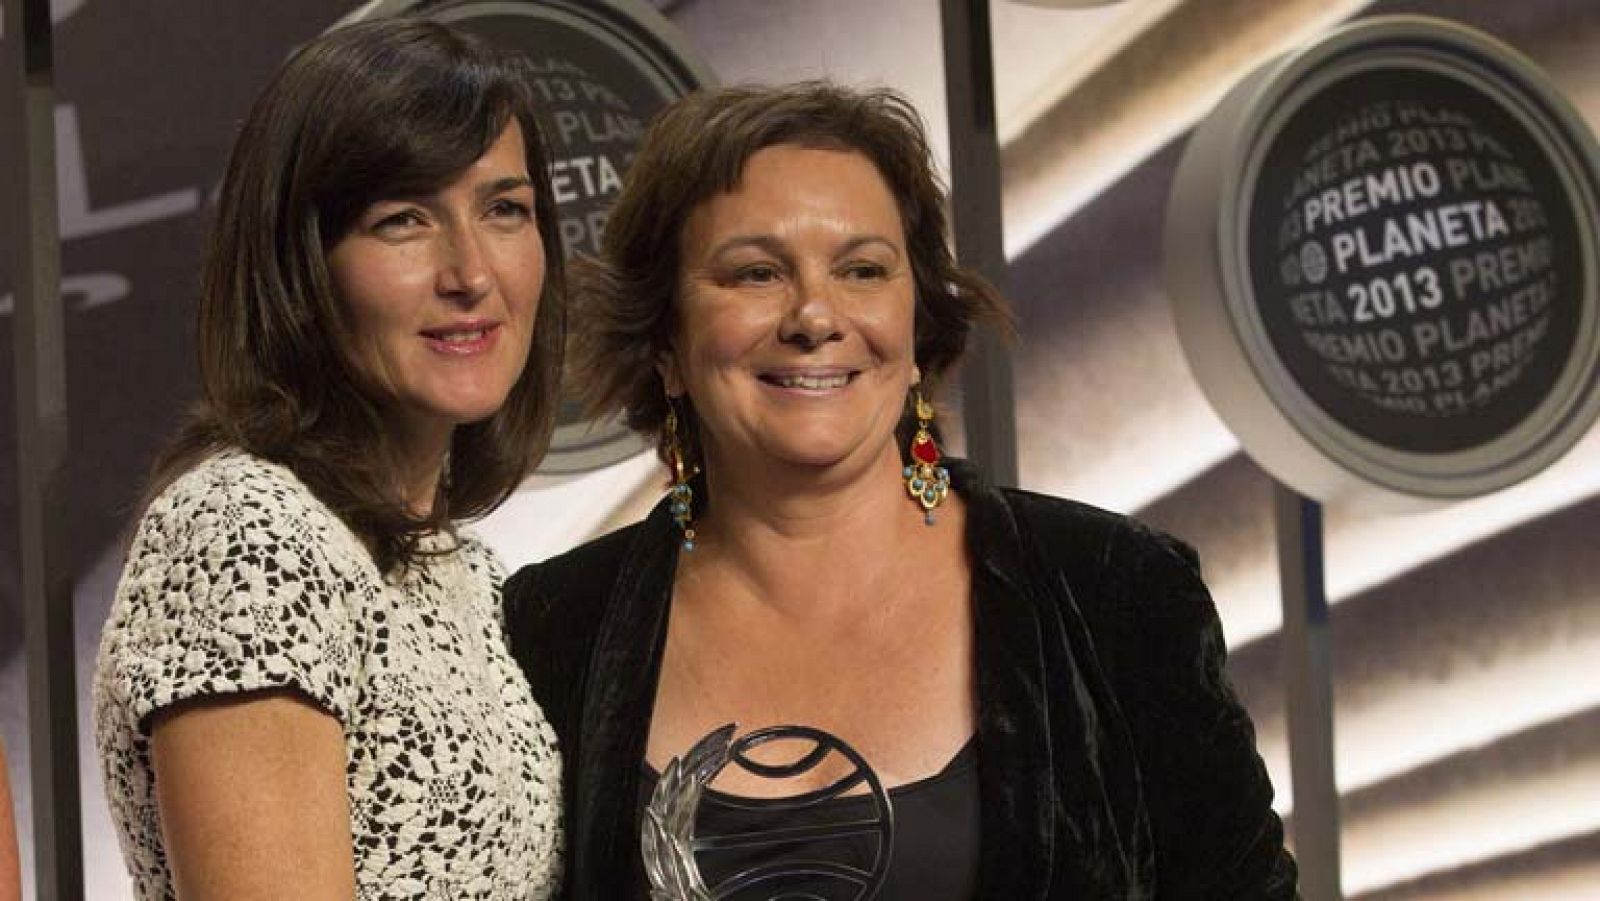 Clara Sánchez y Ángeles González Sinde ganadora y finalista, respectivamente, de los premios Planeta 2013 